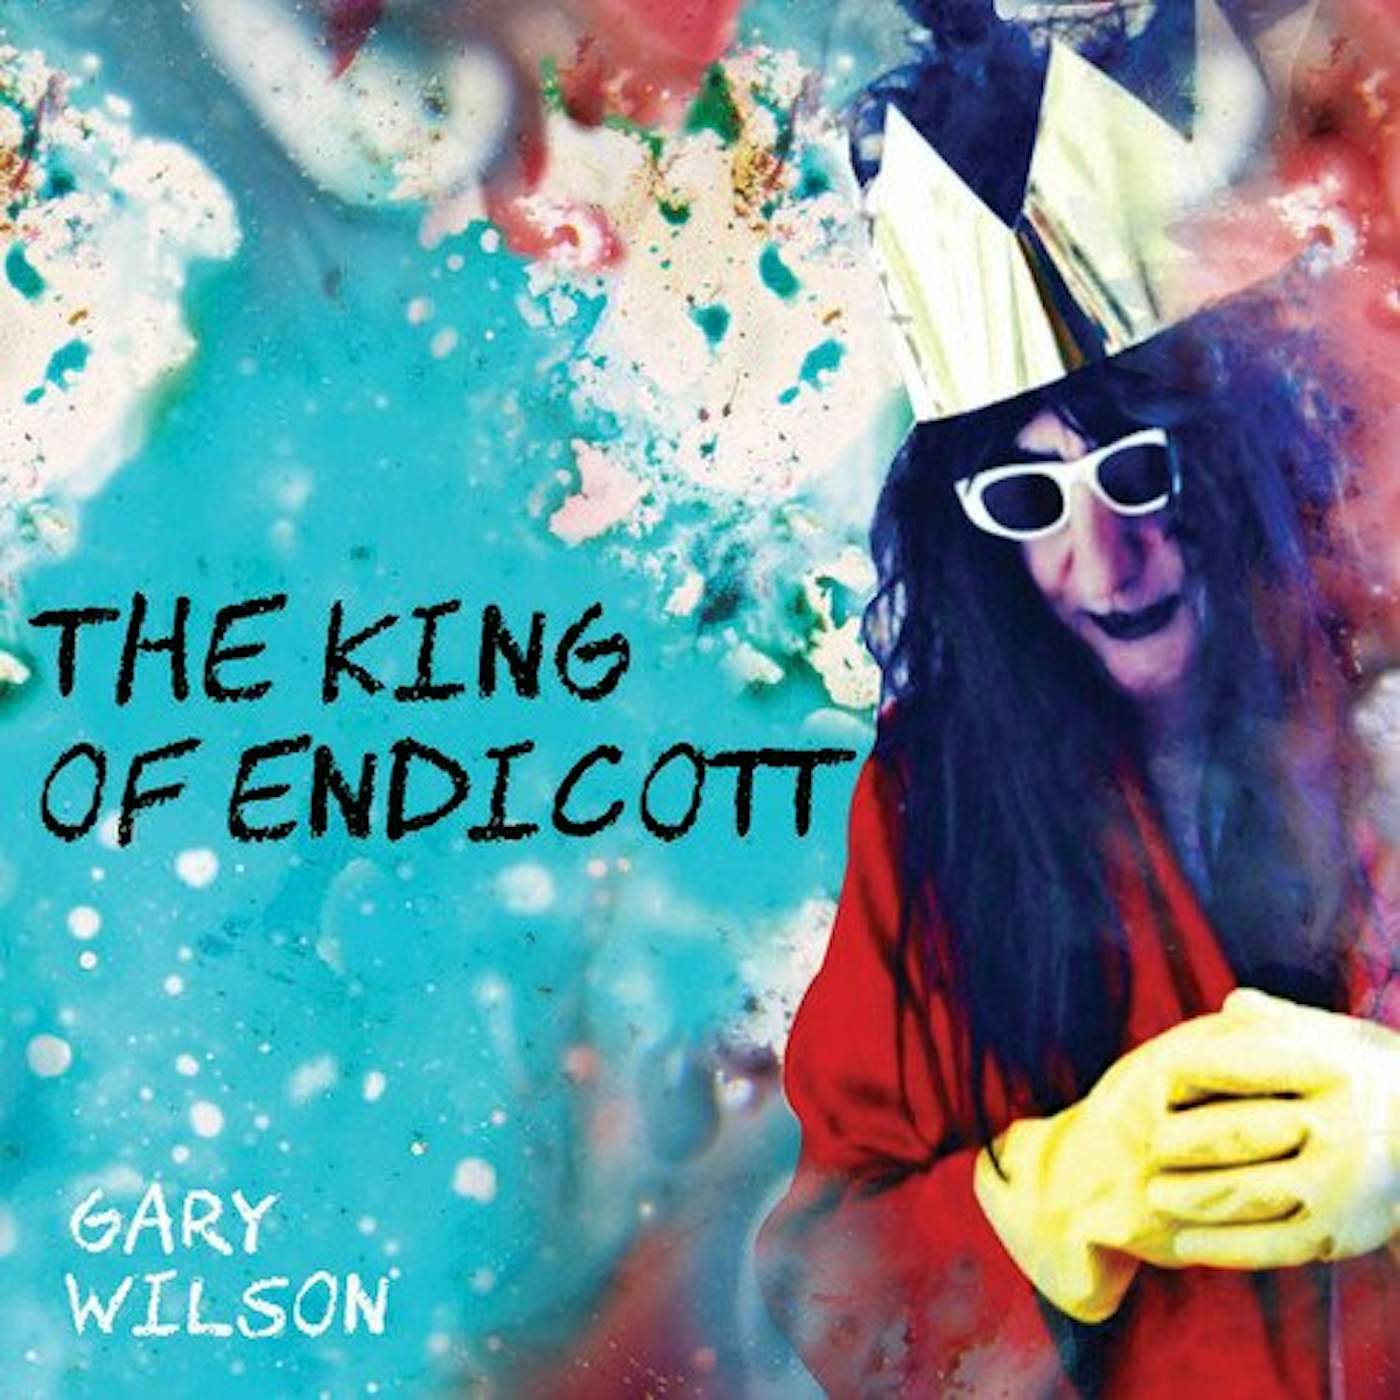 Gary Wilson KING OF ENDICOTT Vinyl Record